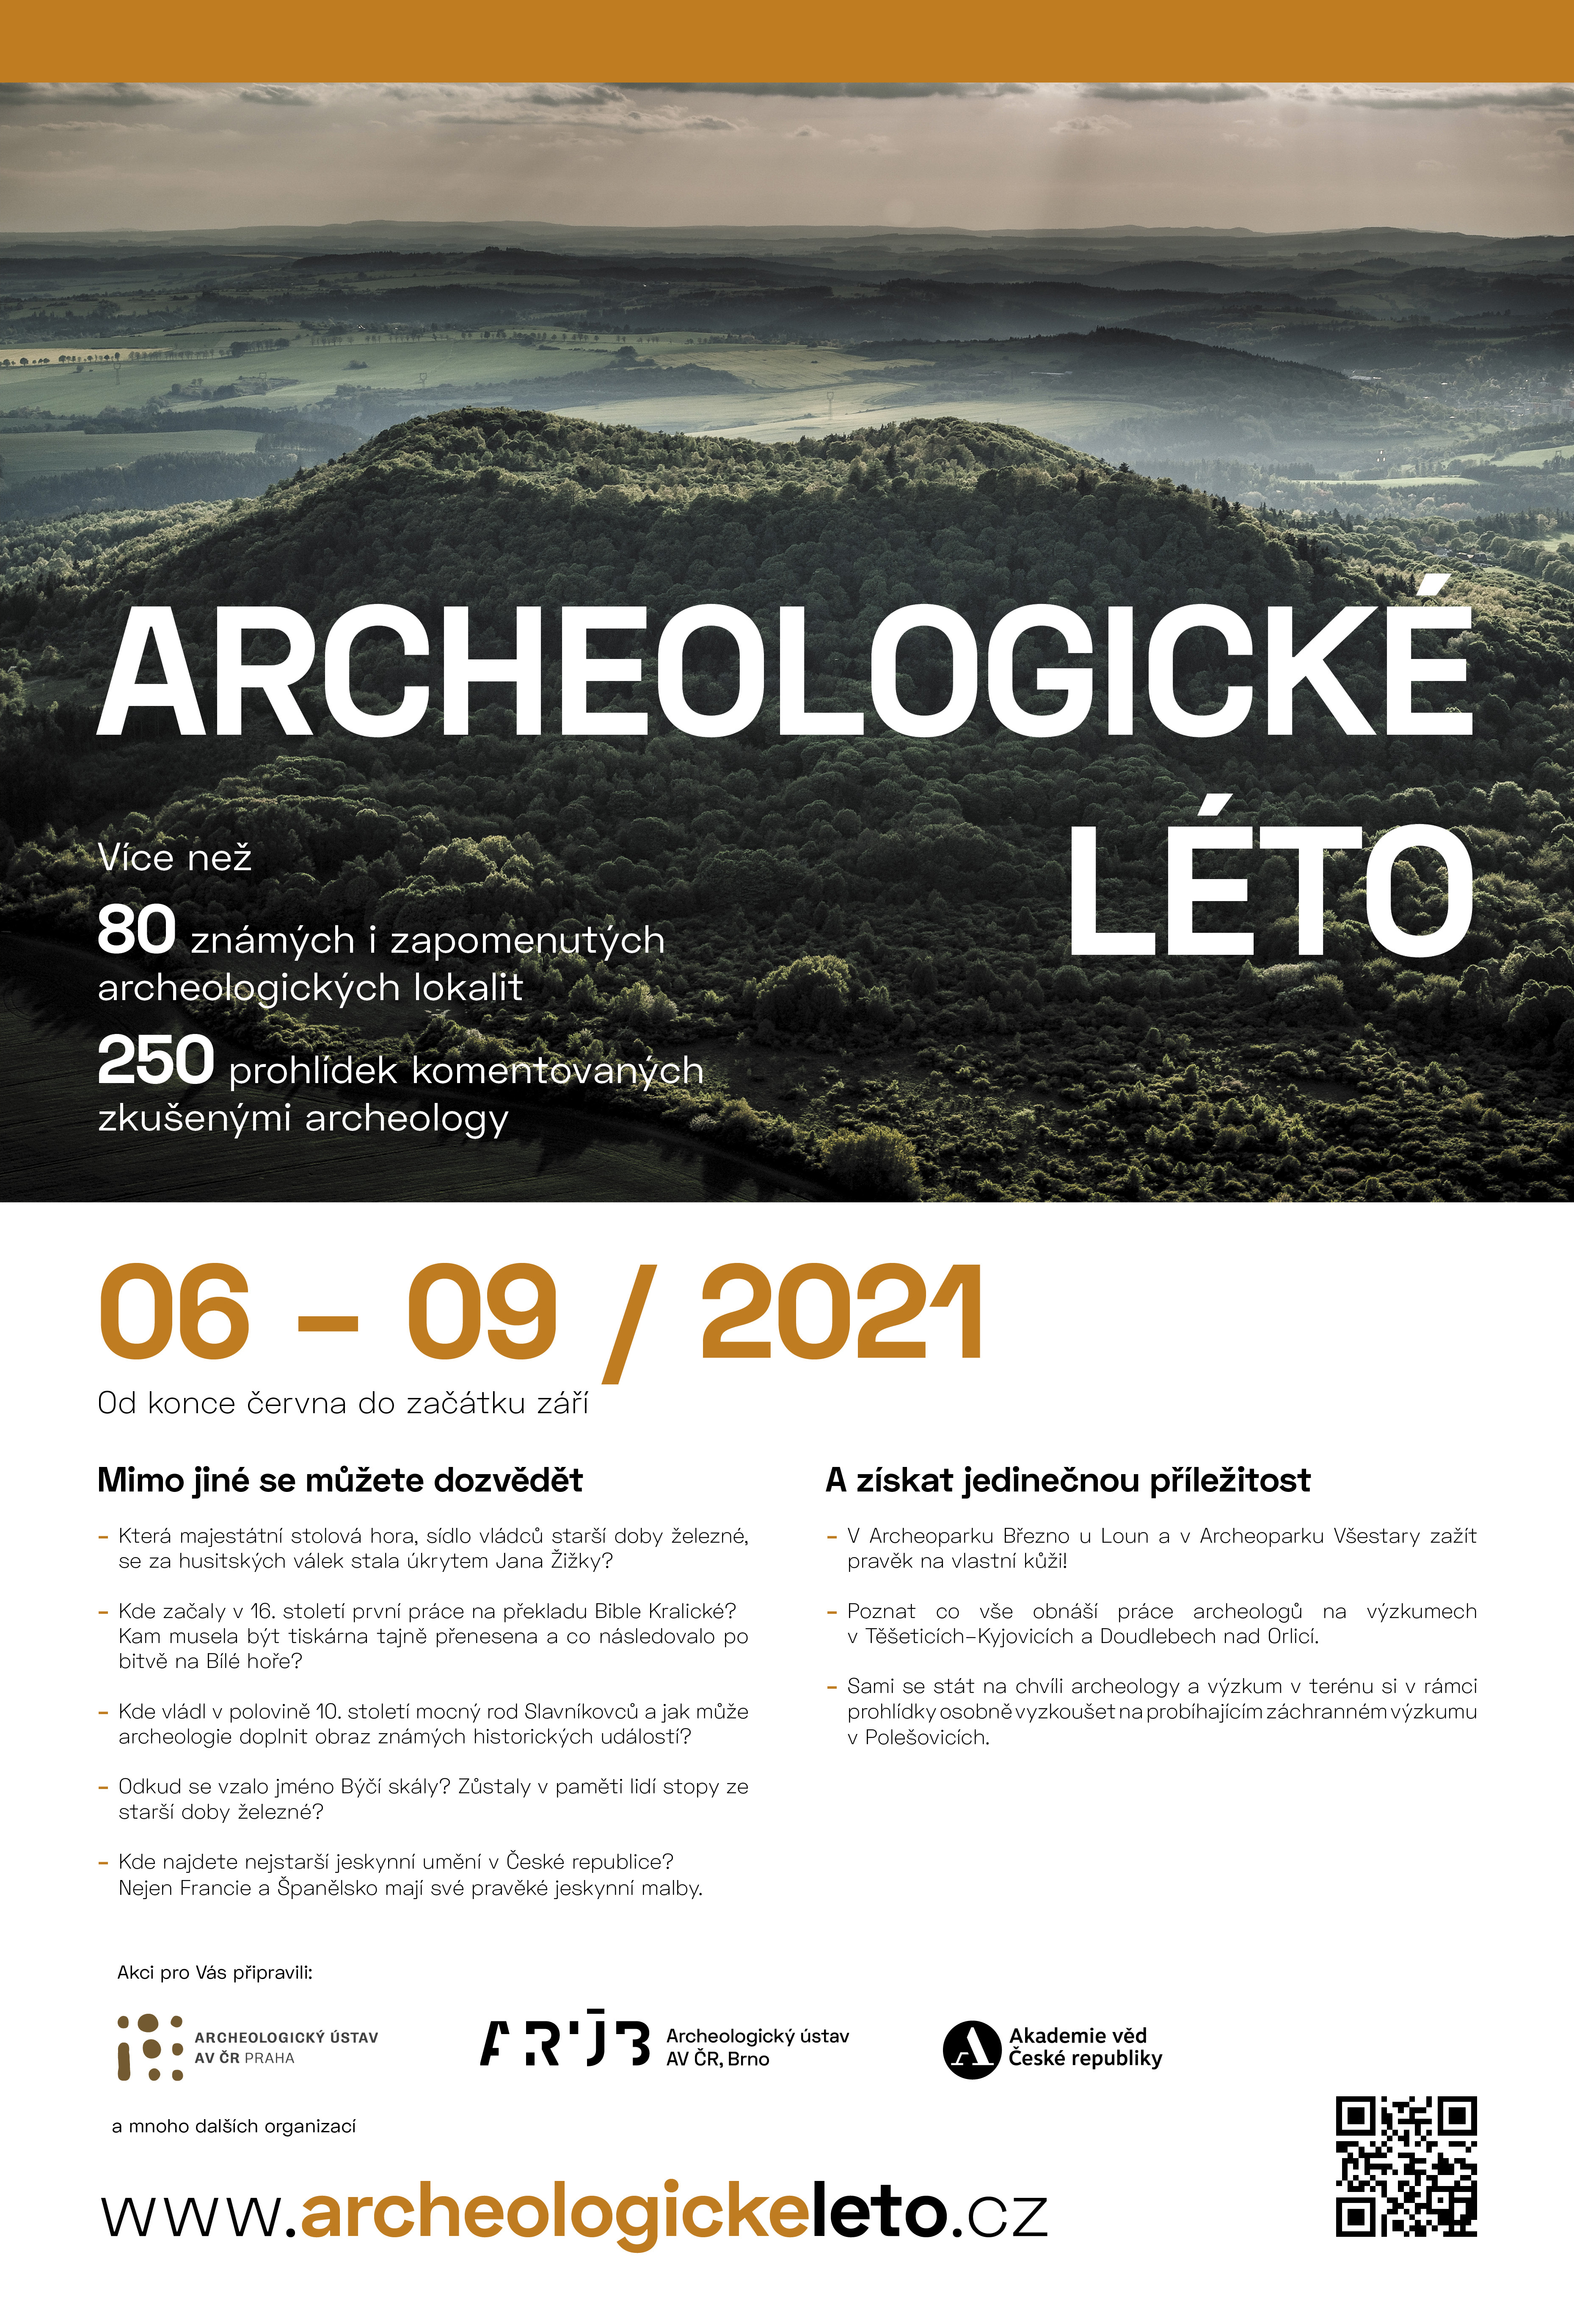 ARUB Archeologicke leto 2021 700x1000